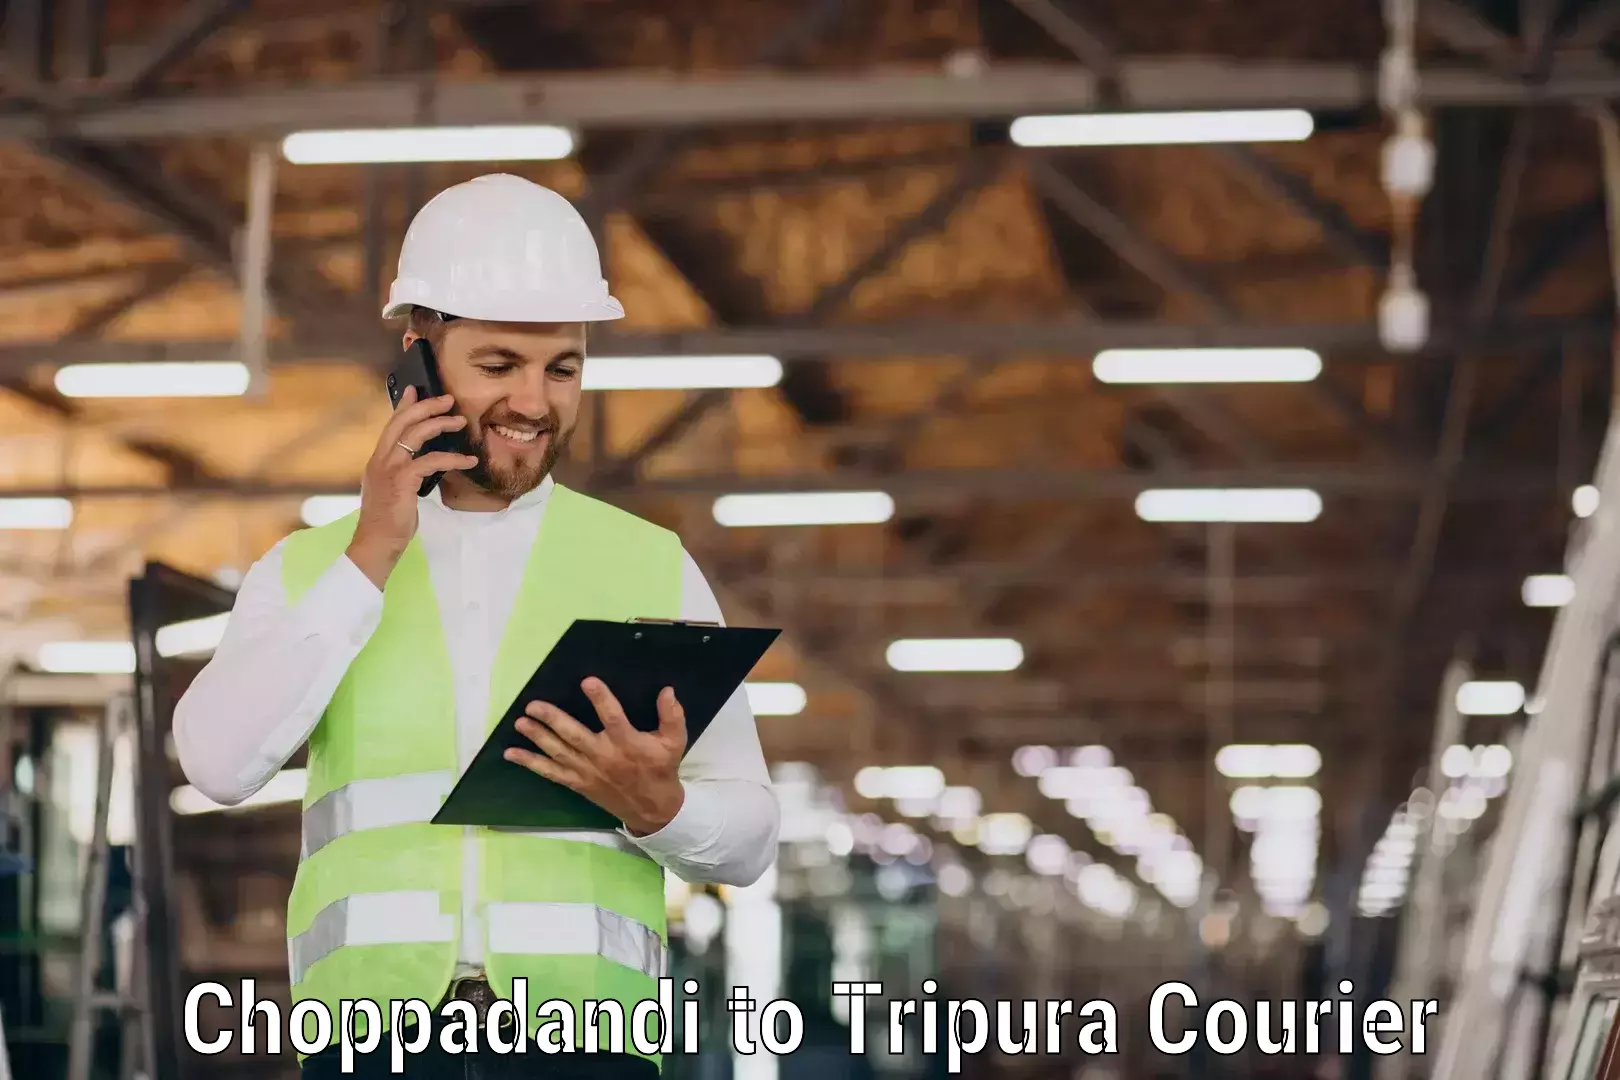 Urgent courier needs Choppadandi to Amarpur